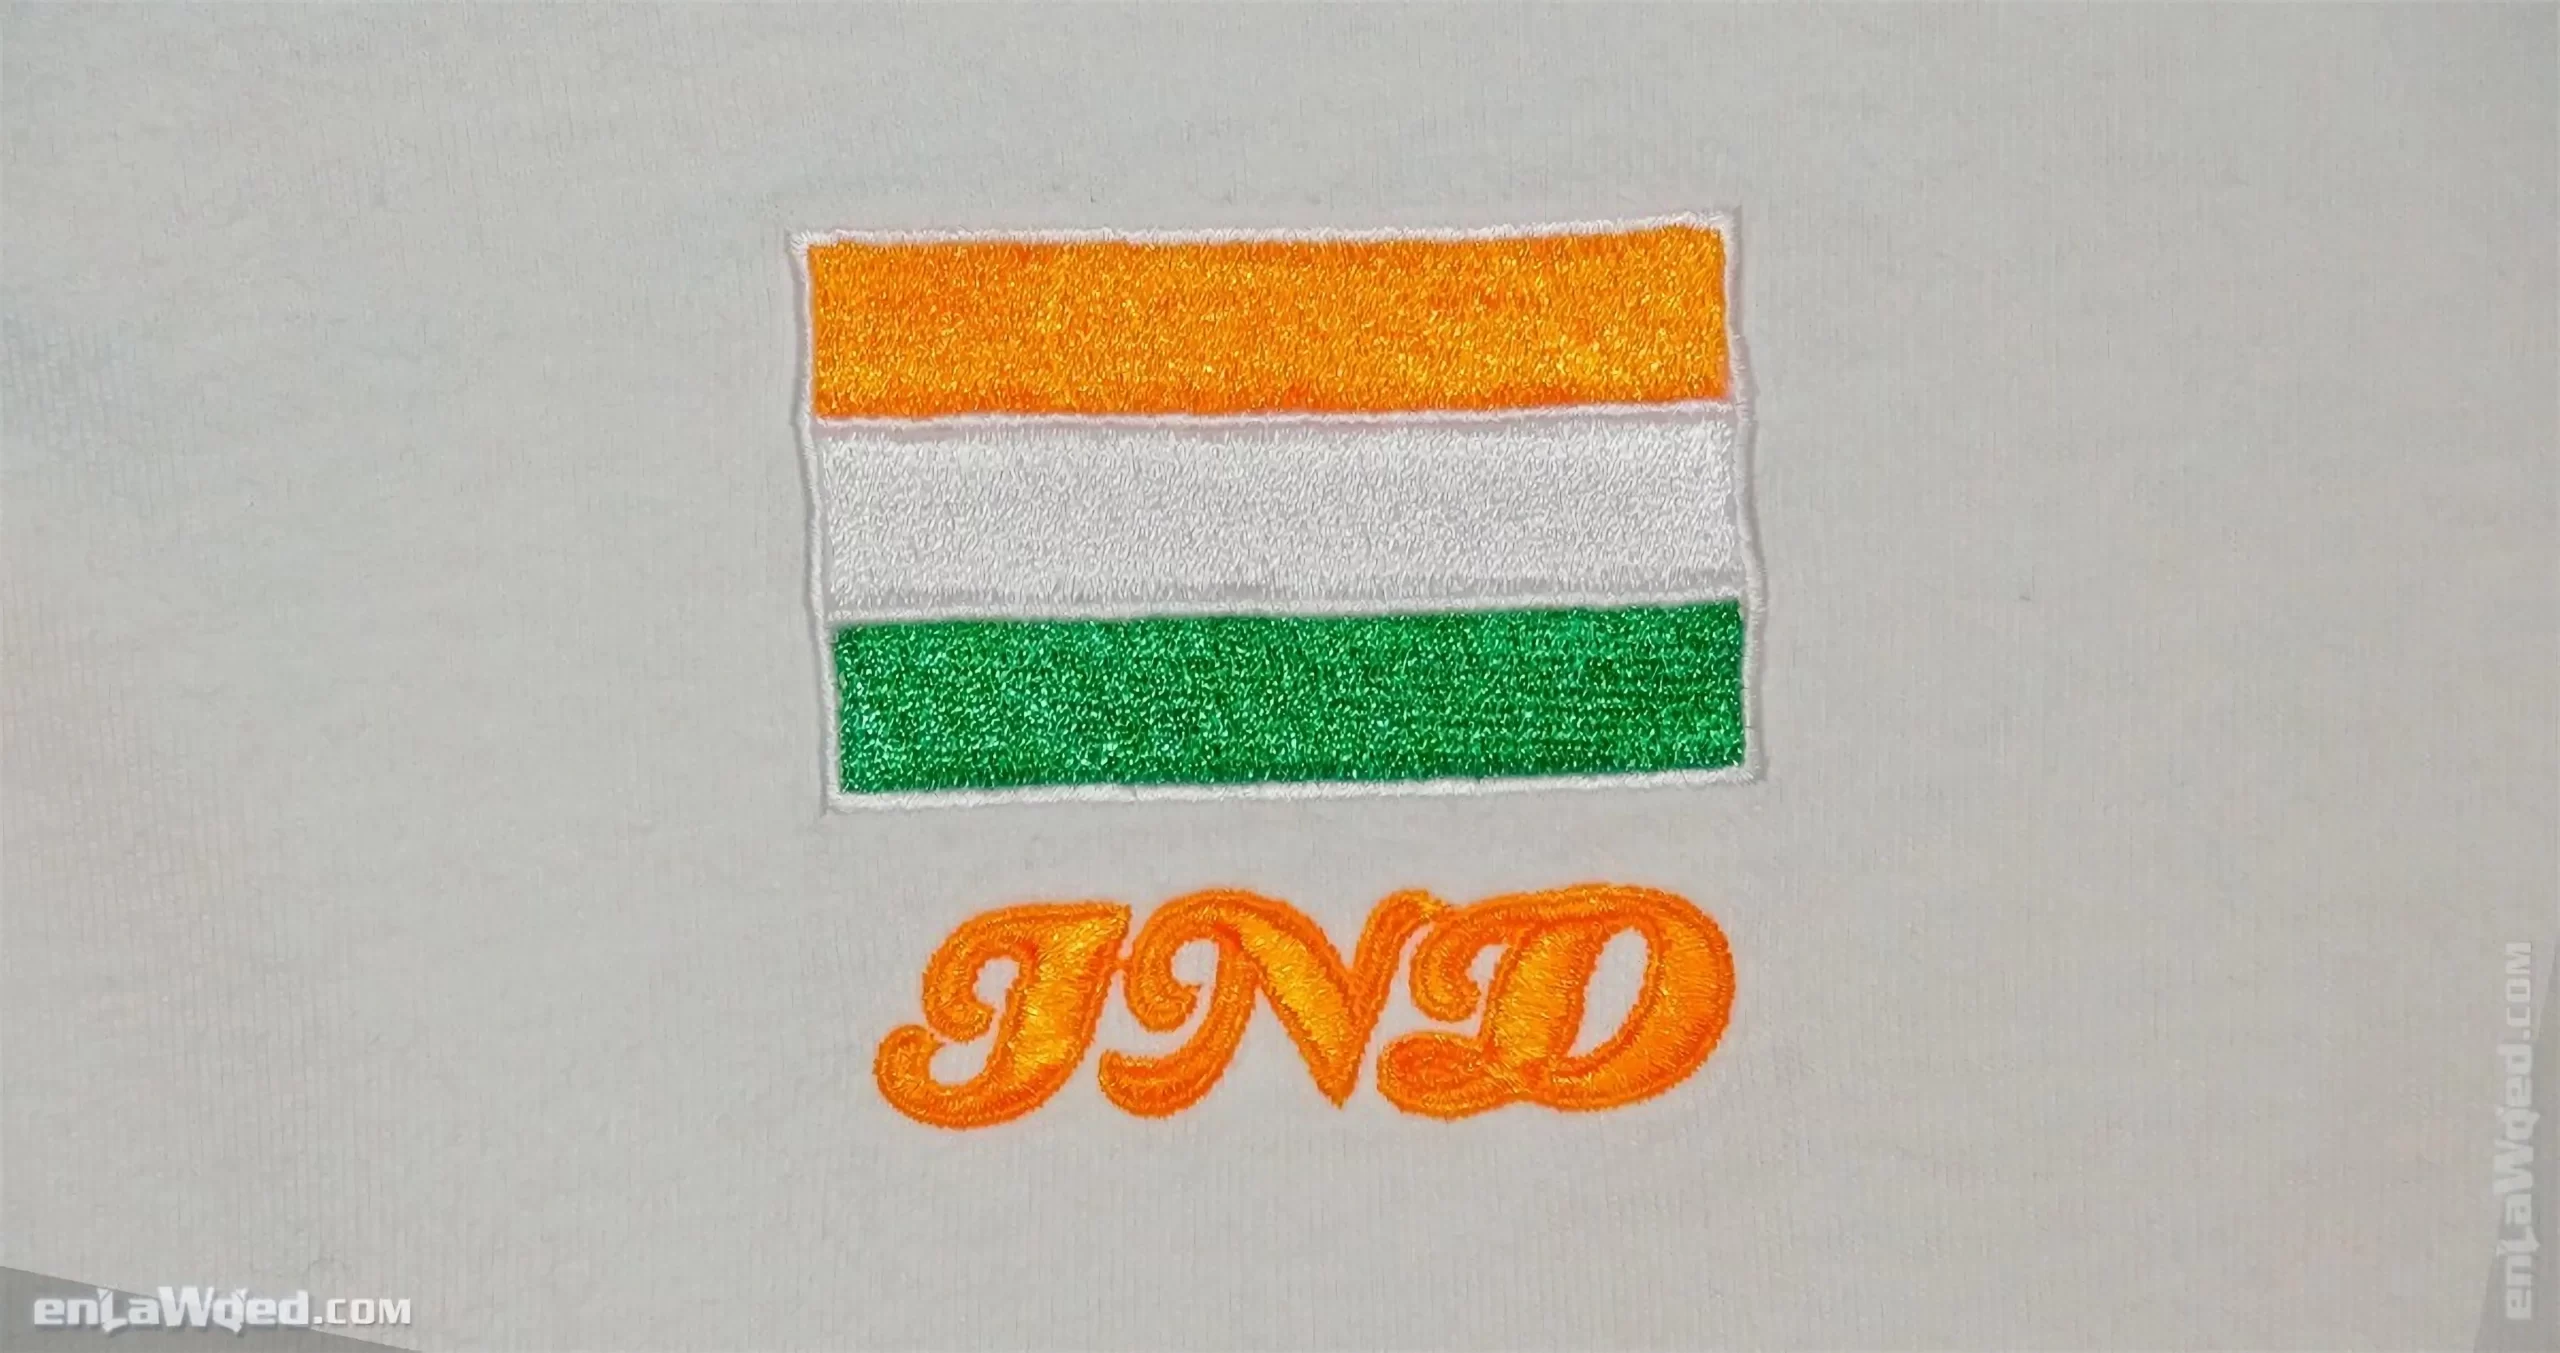 Men’s 2005 India T-Shirt by Adidas Originals: Proven (EnLawded.com file #lmcfvrnjj2lzmz57f3)